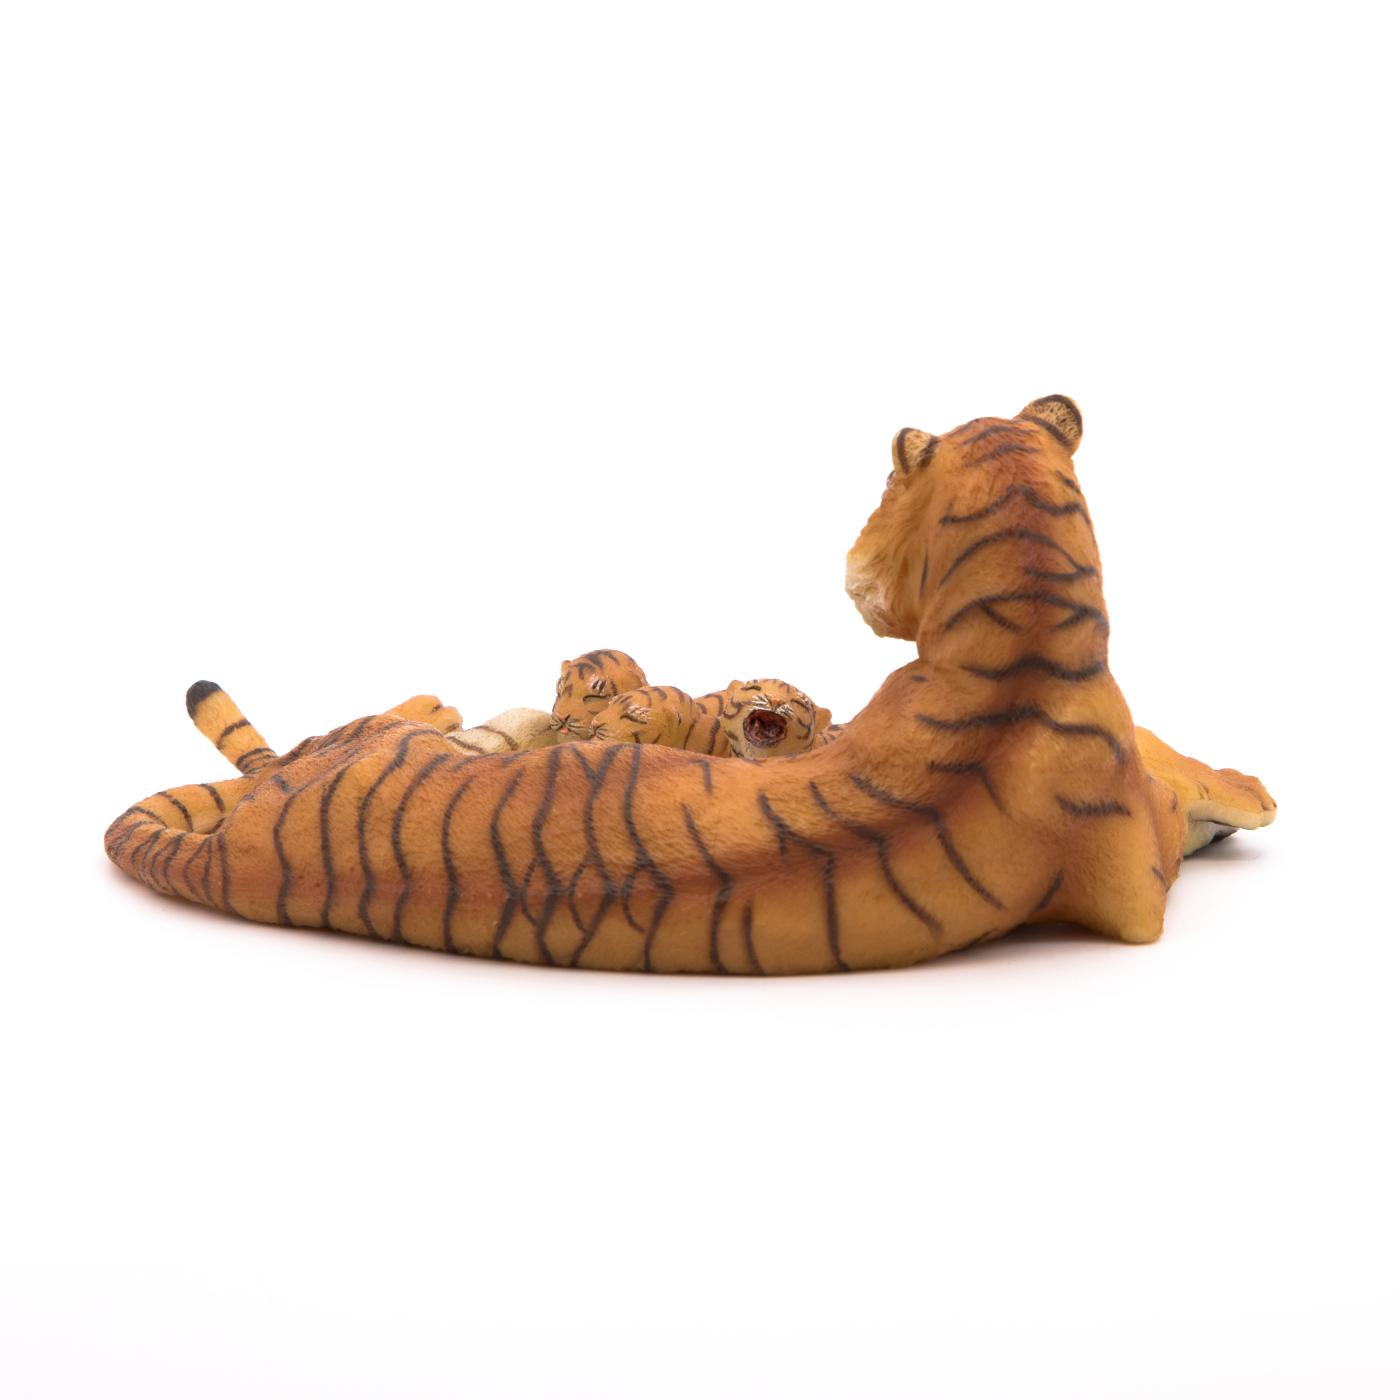 NEU Spielfigur Wildtiere Papo 50208 stehender Tiger Figur 